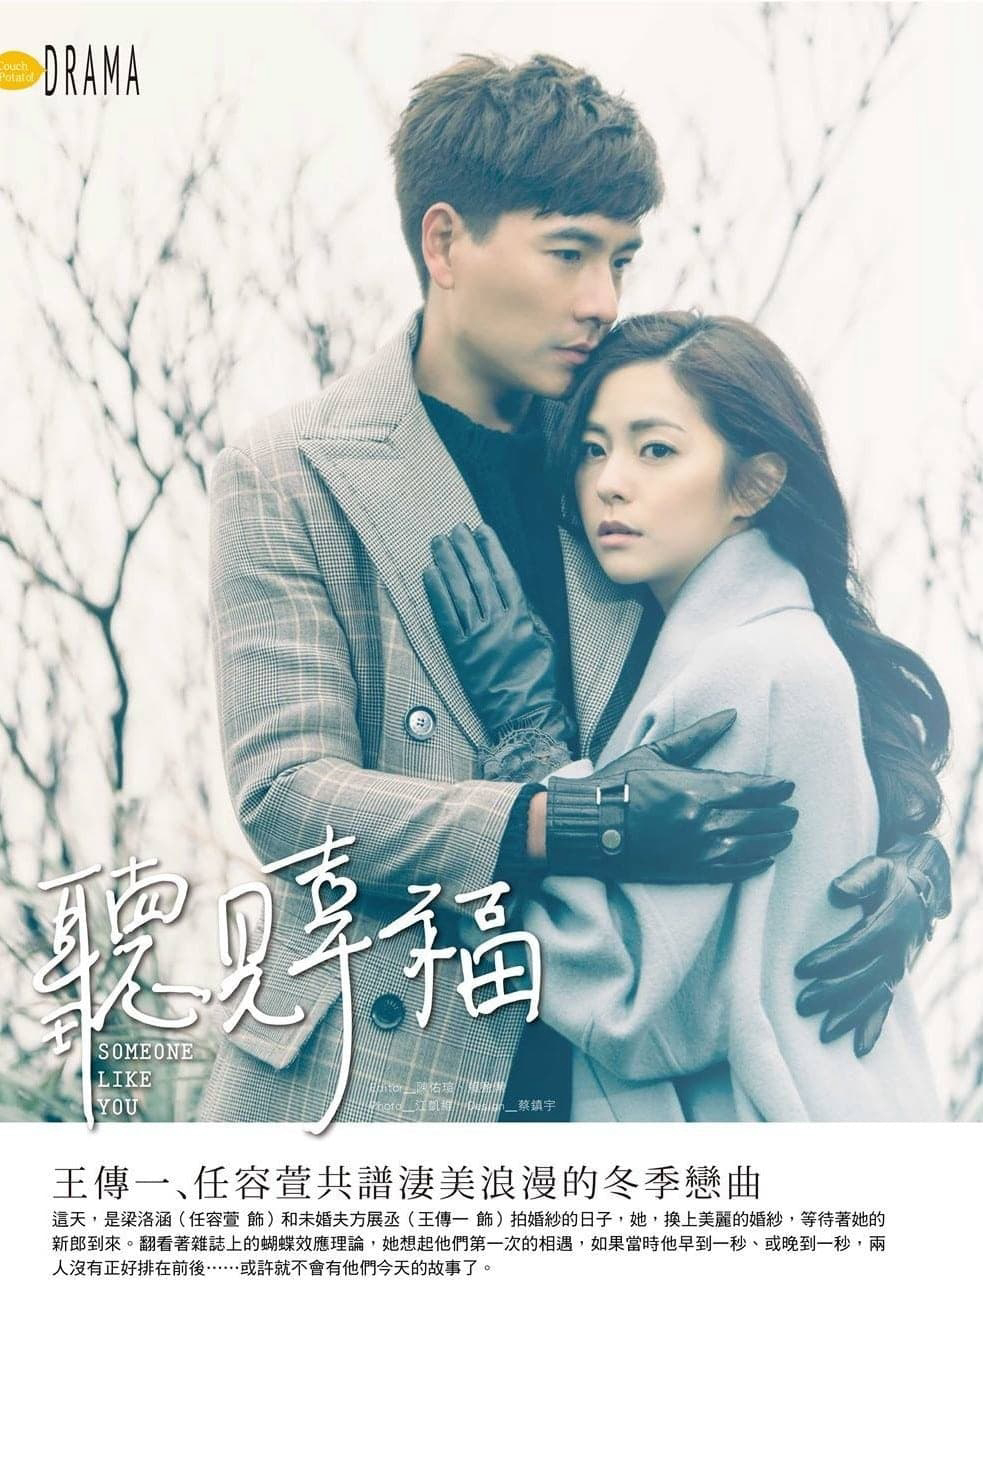 Poster Phim Lắng Nghe Hạnh Phúc (Someone Like You)